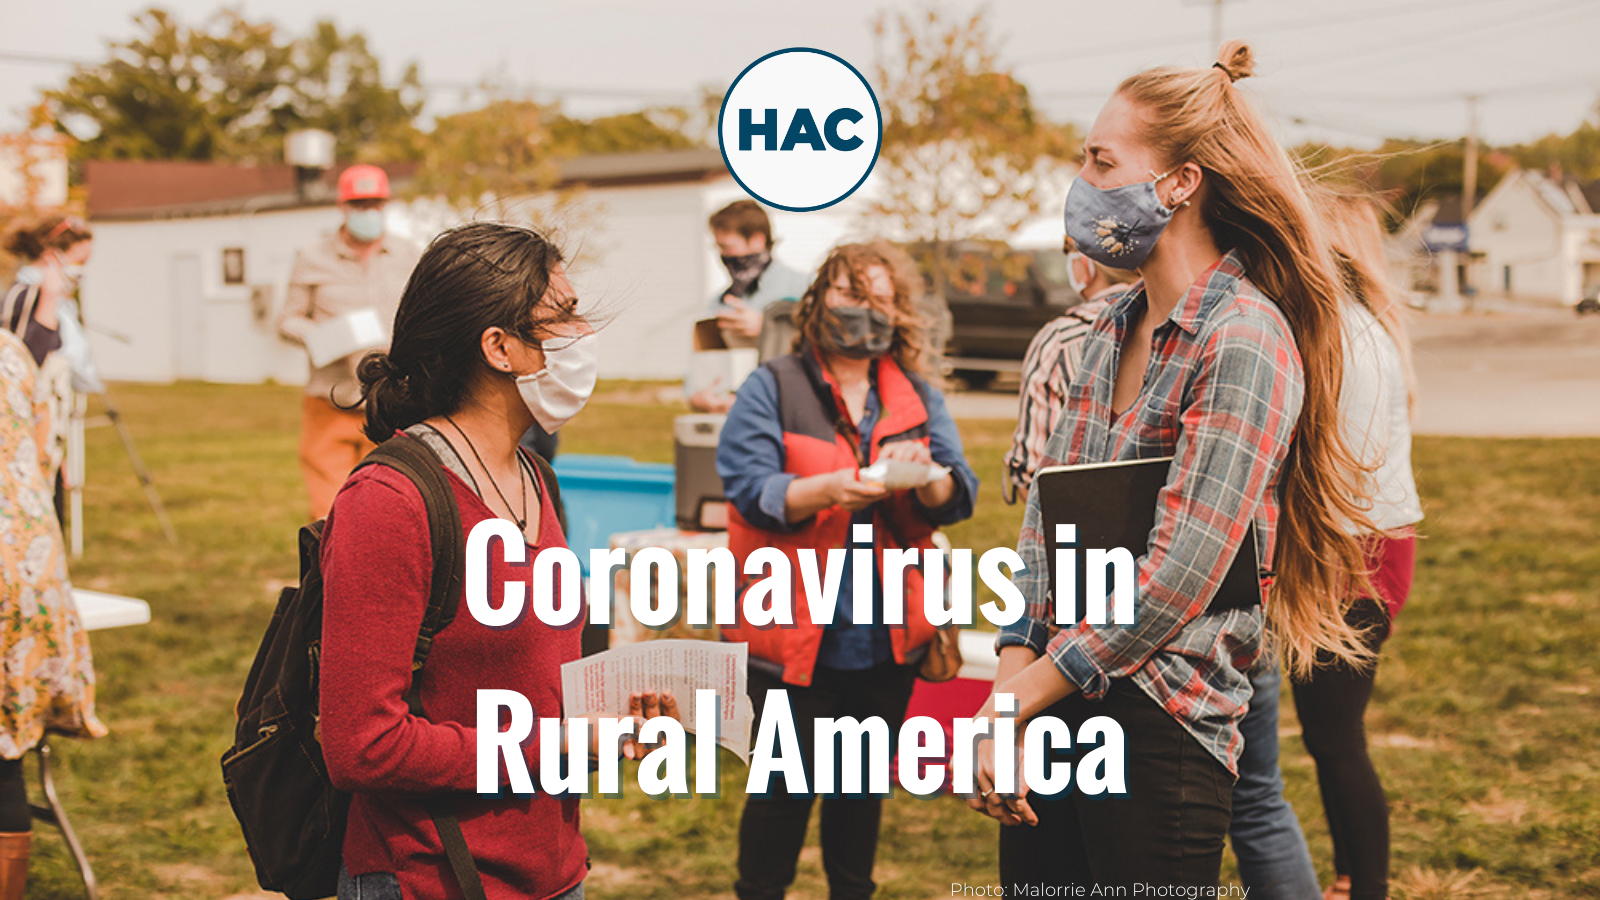 Coronavirus news